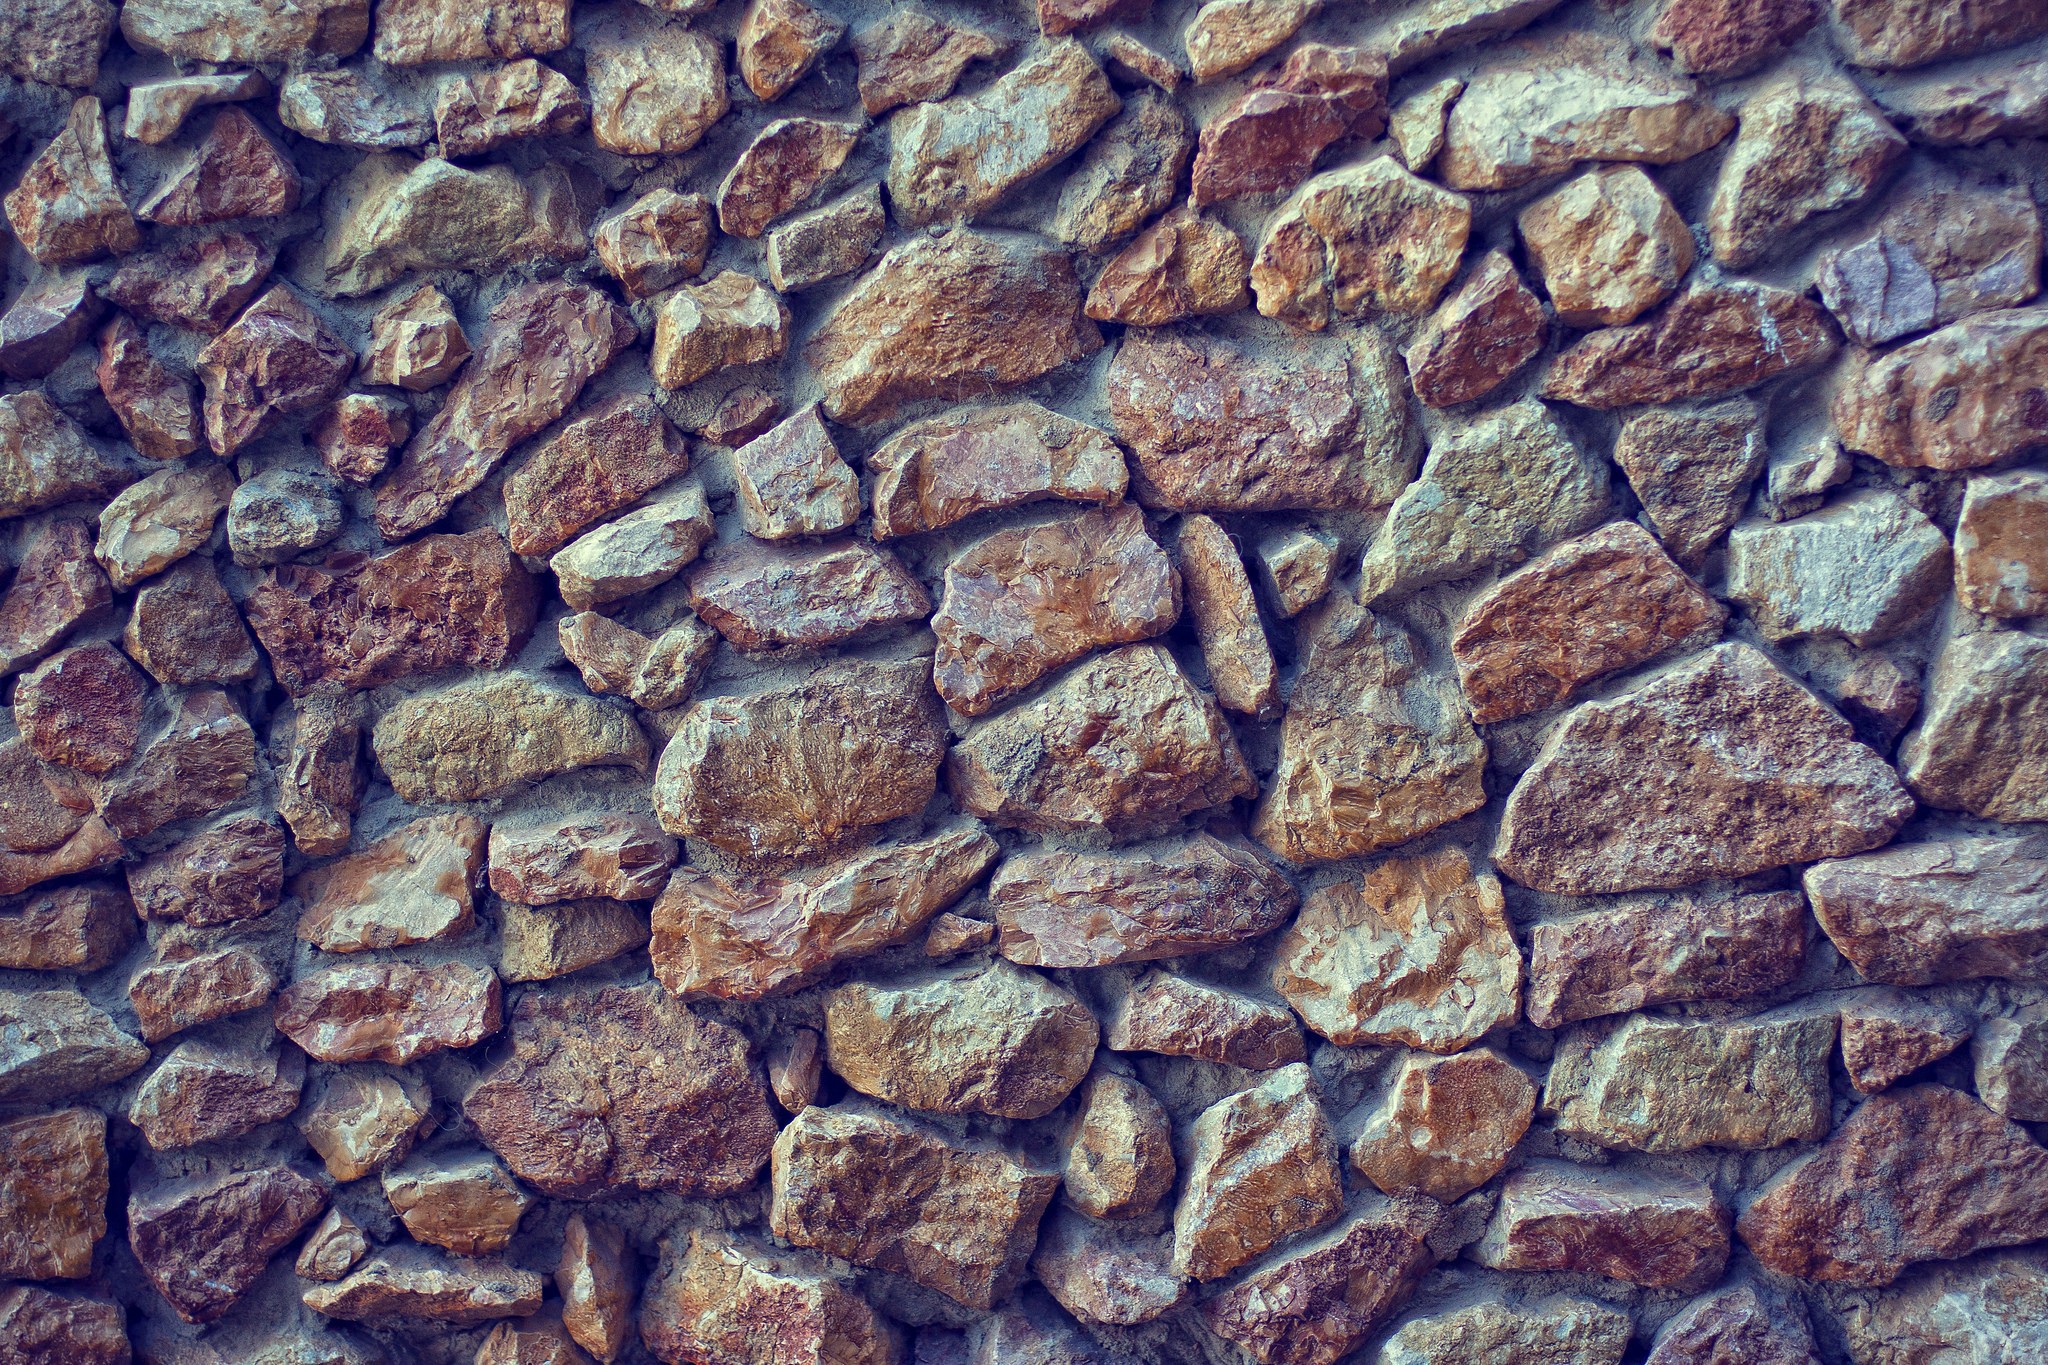 General 2048x1365 wall stones texture closeup